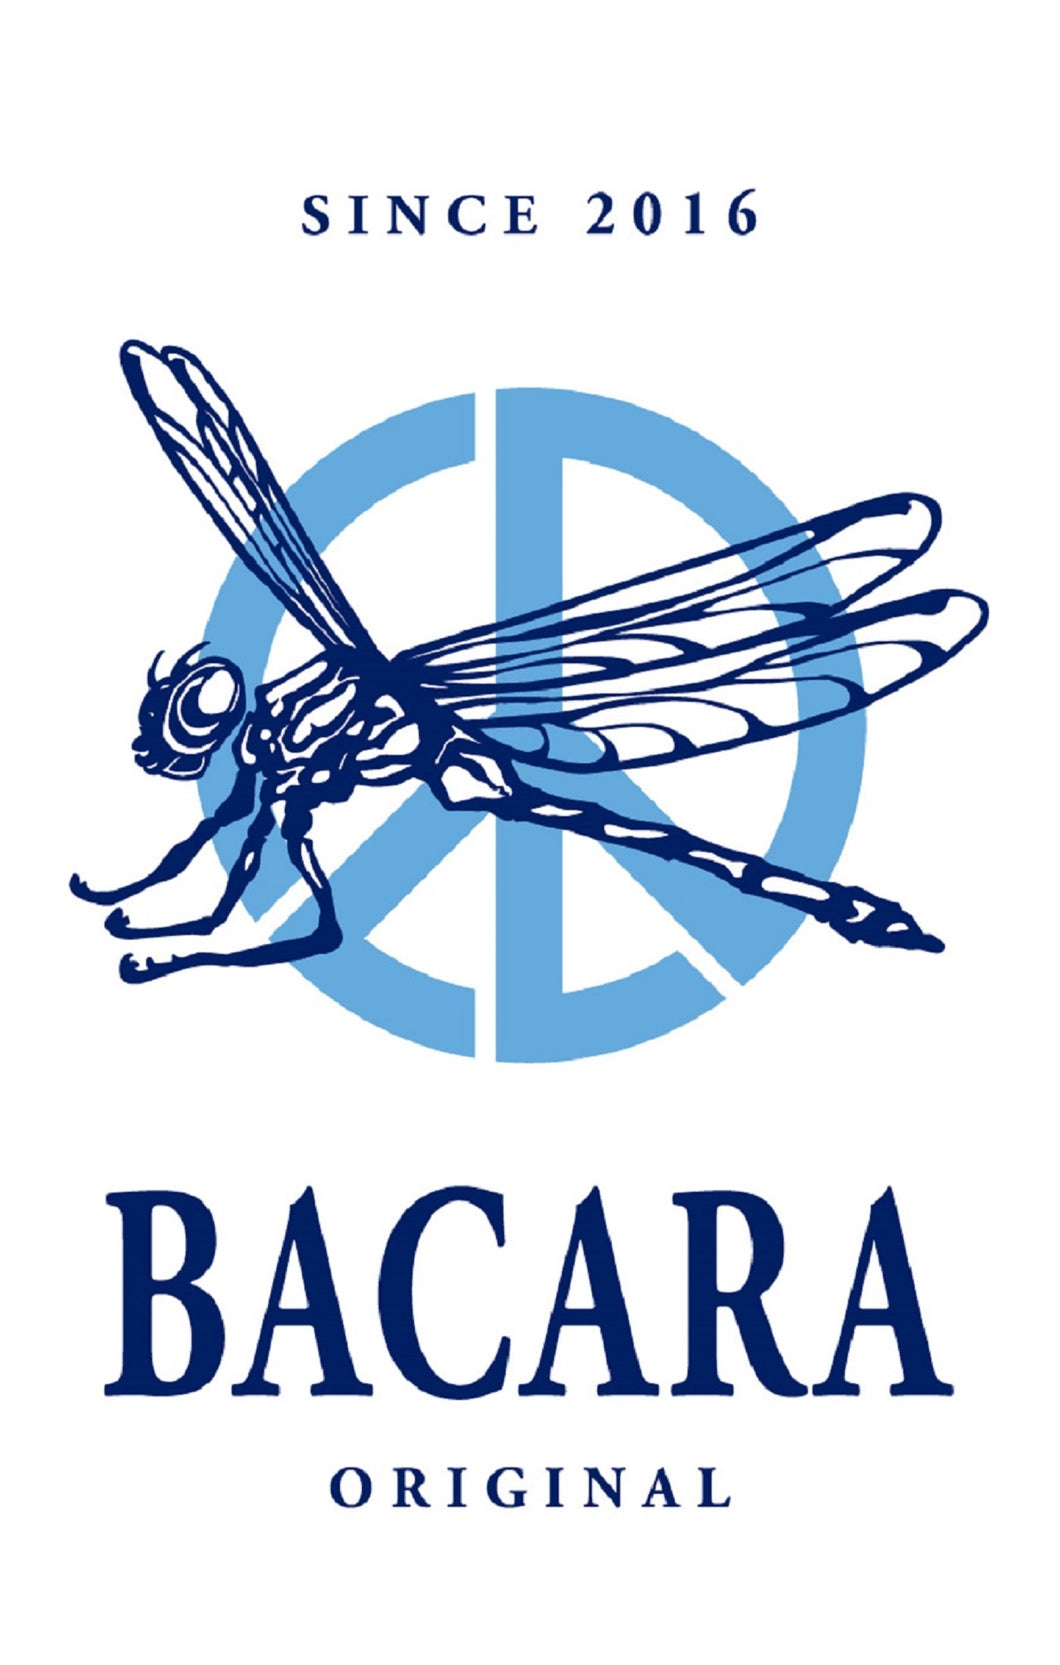 Bacara - Original NEW CASSETTE